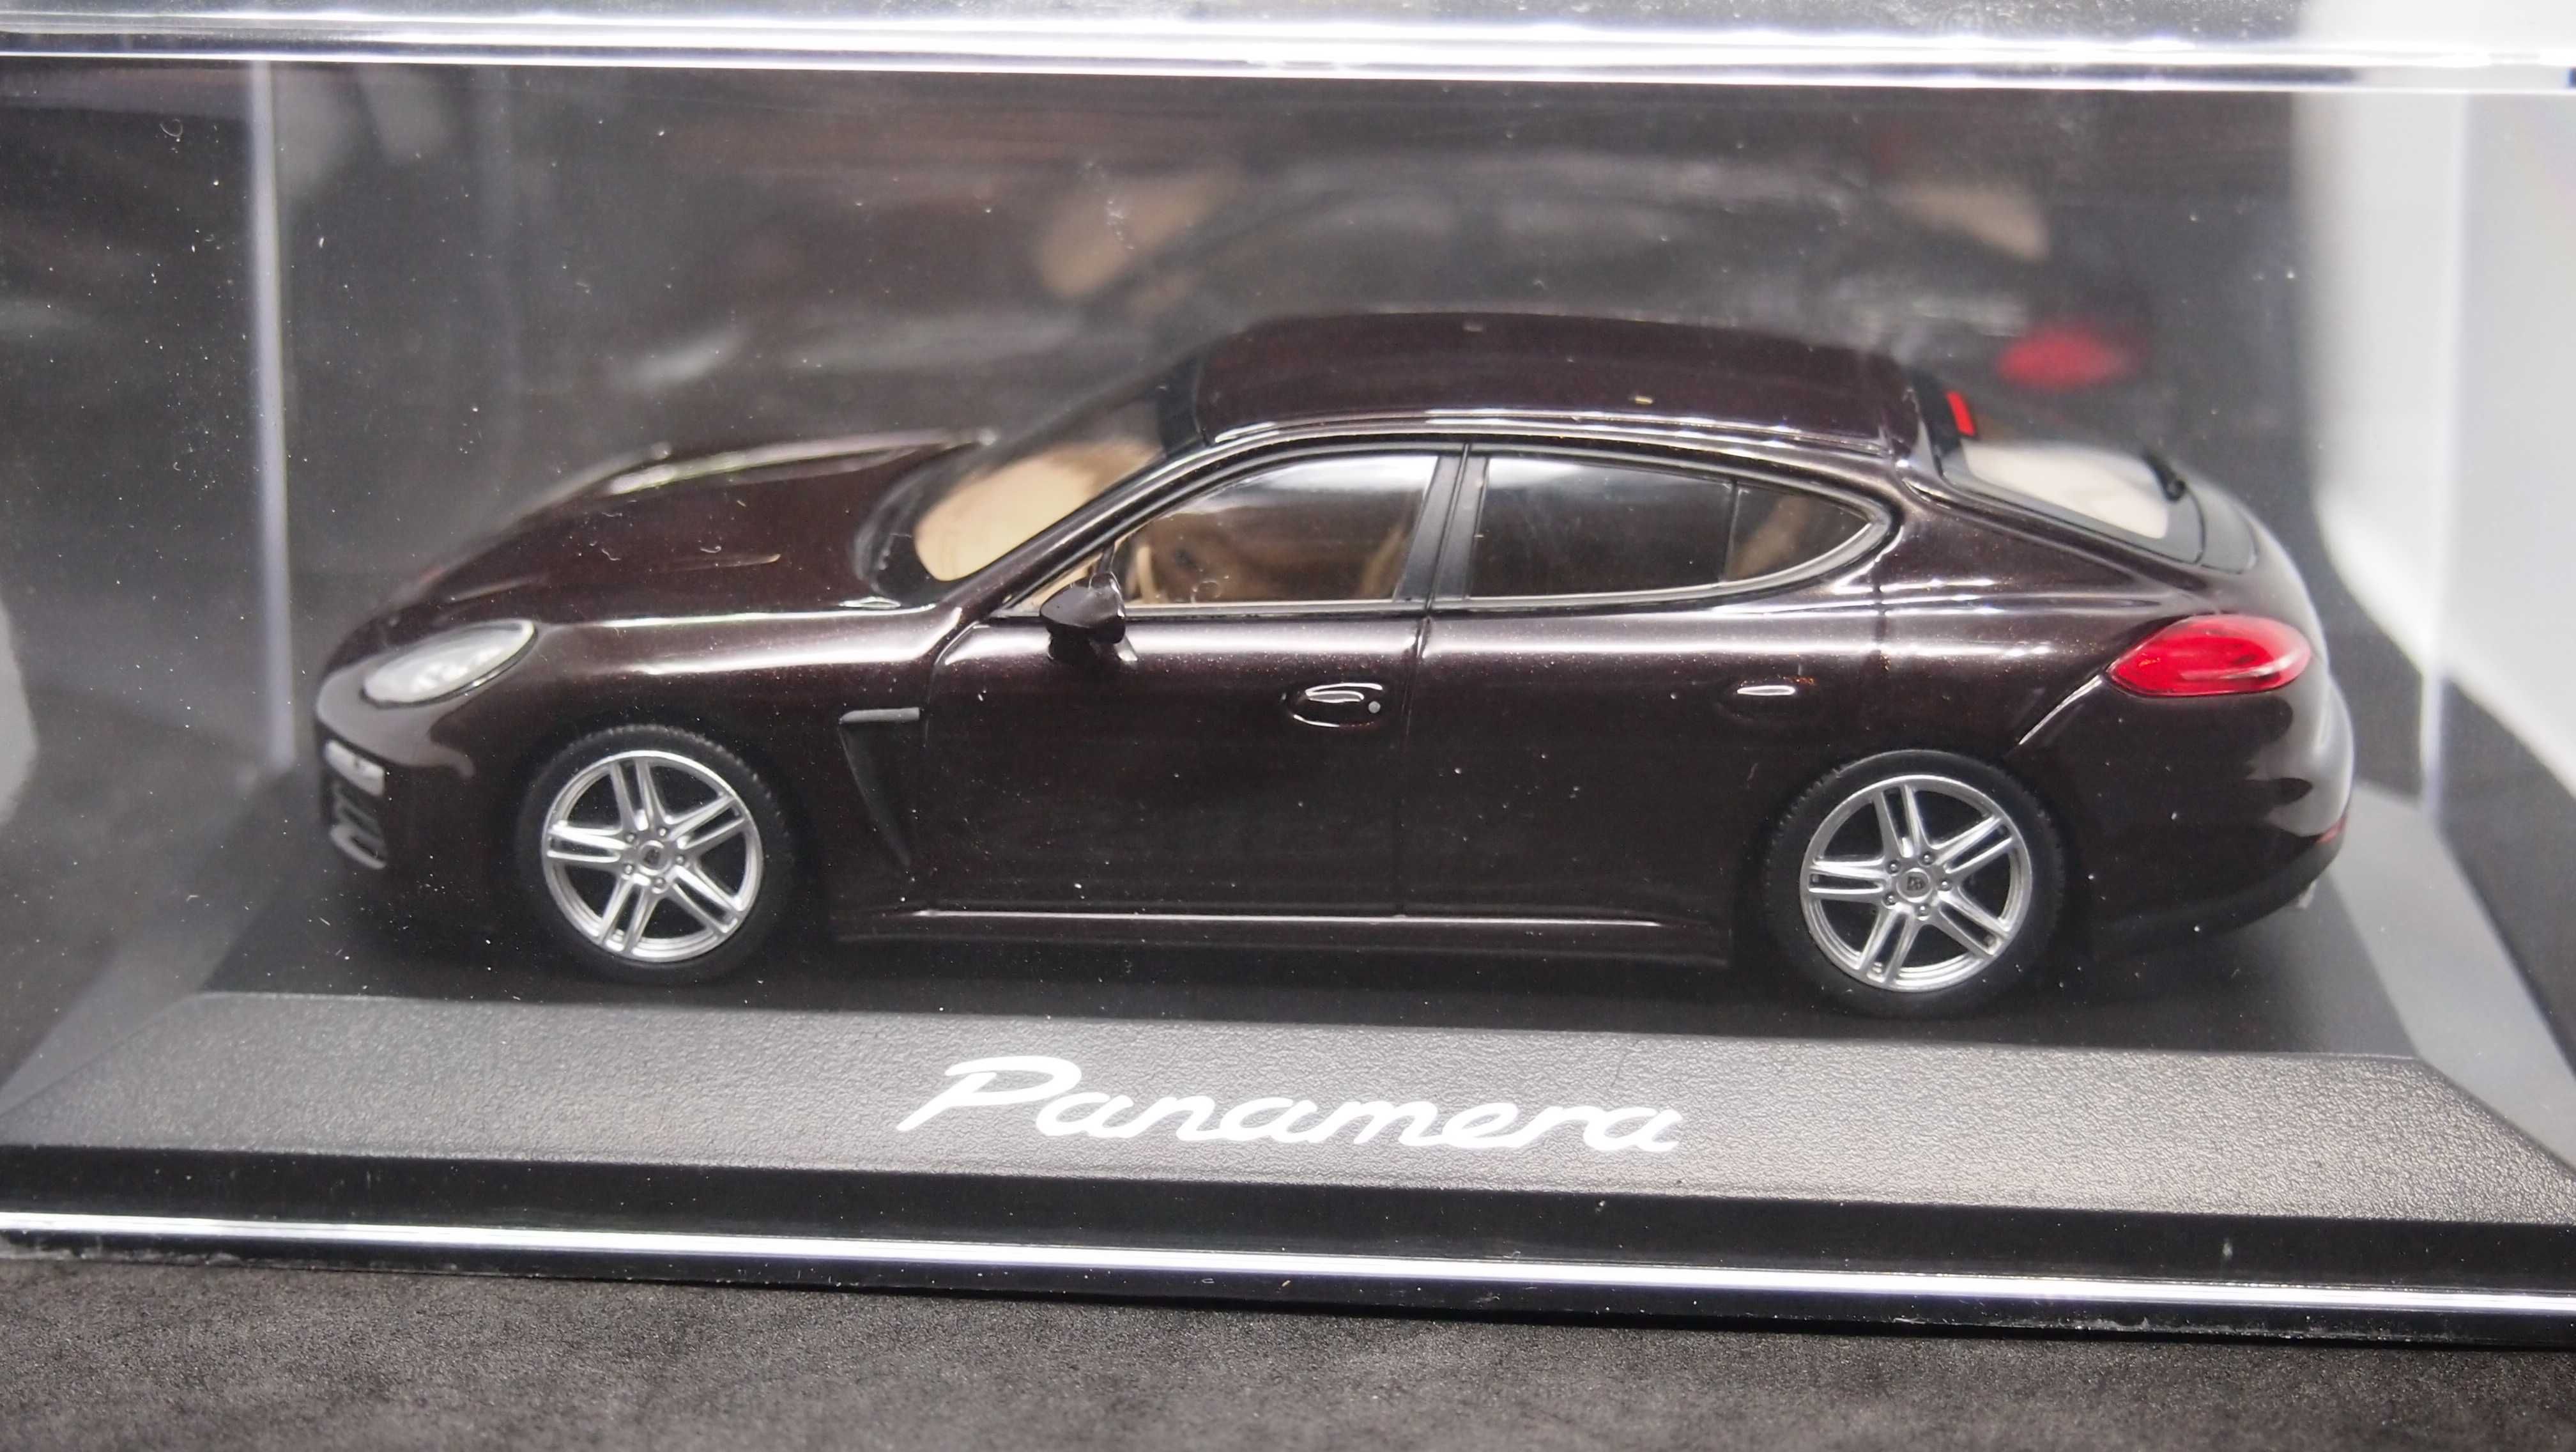 Macheta Porsche Panamera Minichamps 1:43